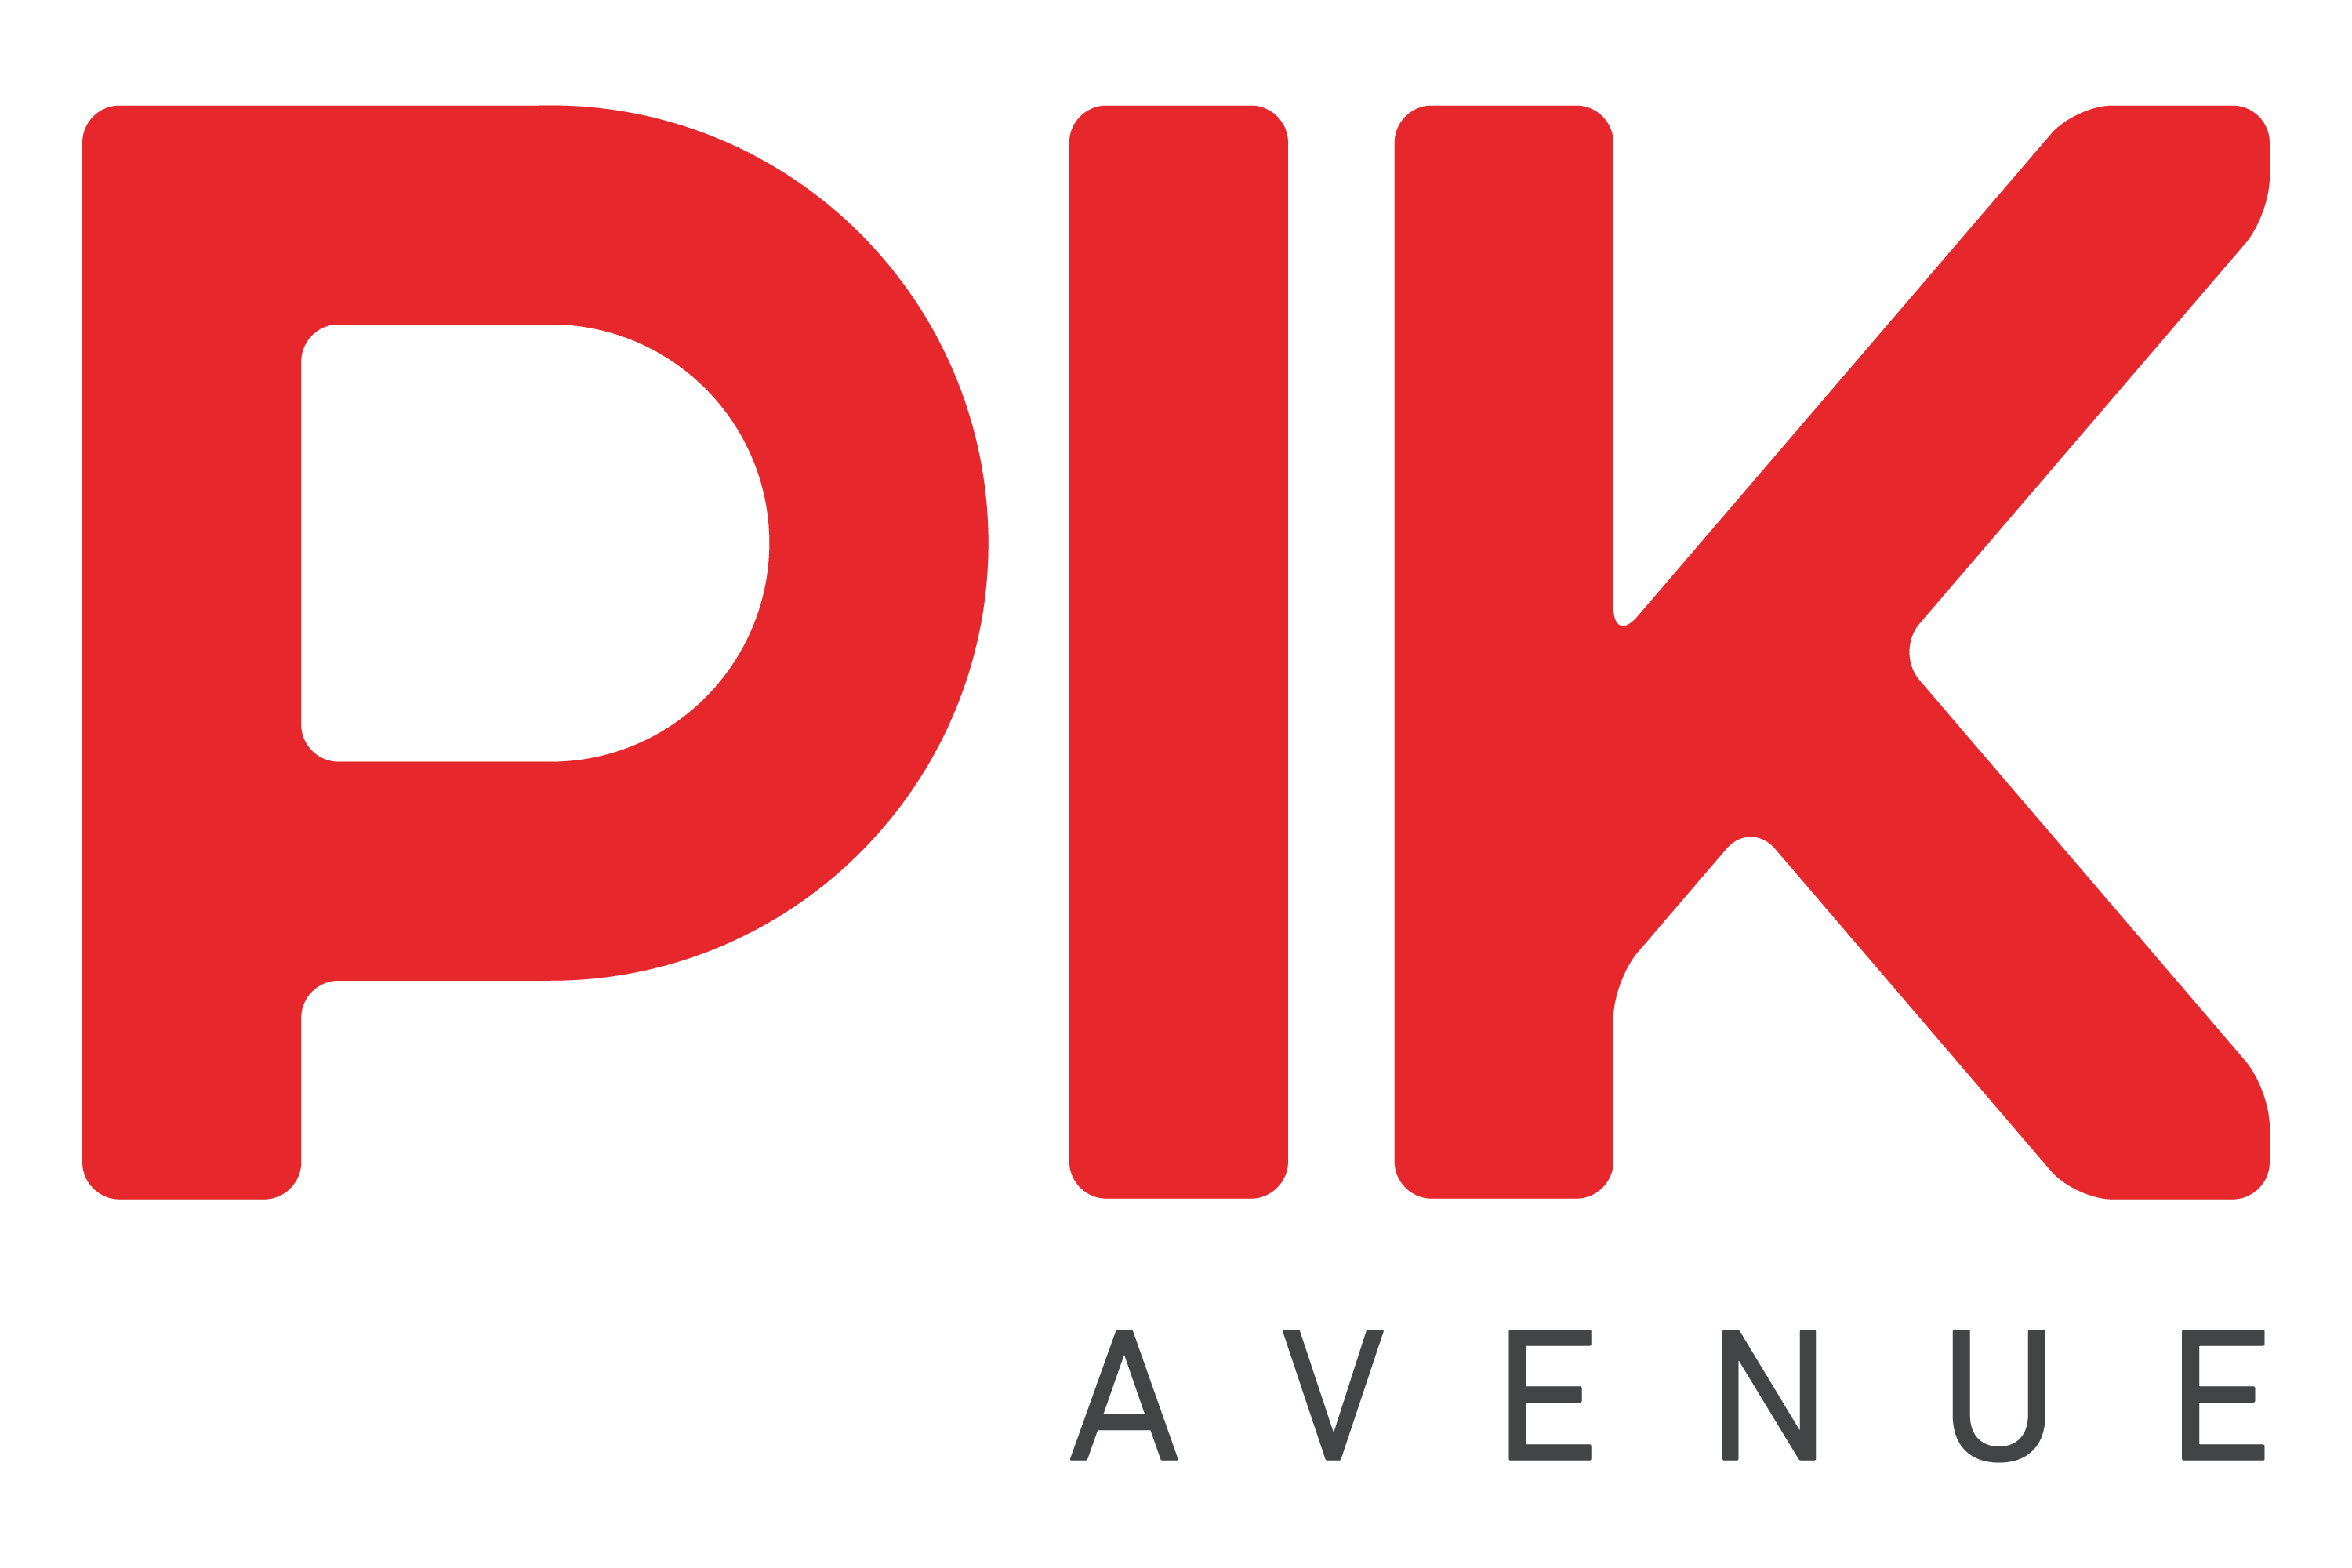 VLIFE - PIK Avenue